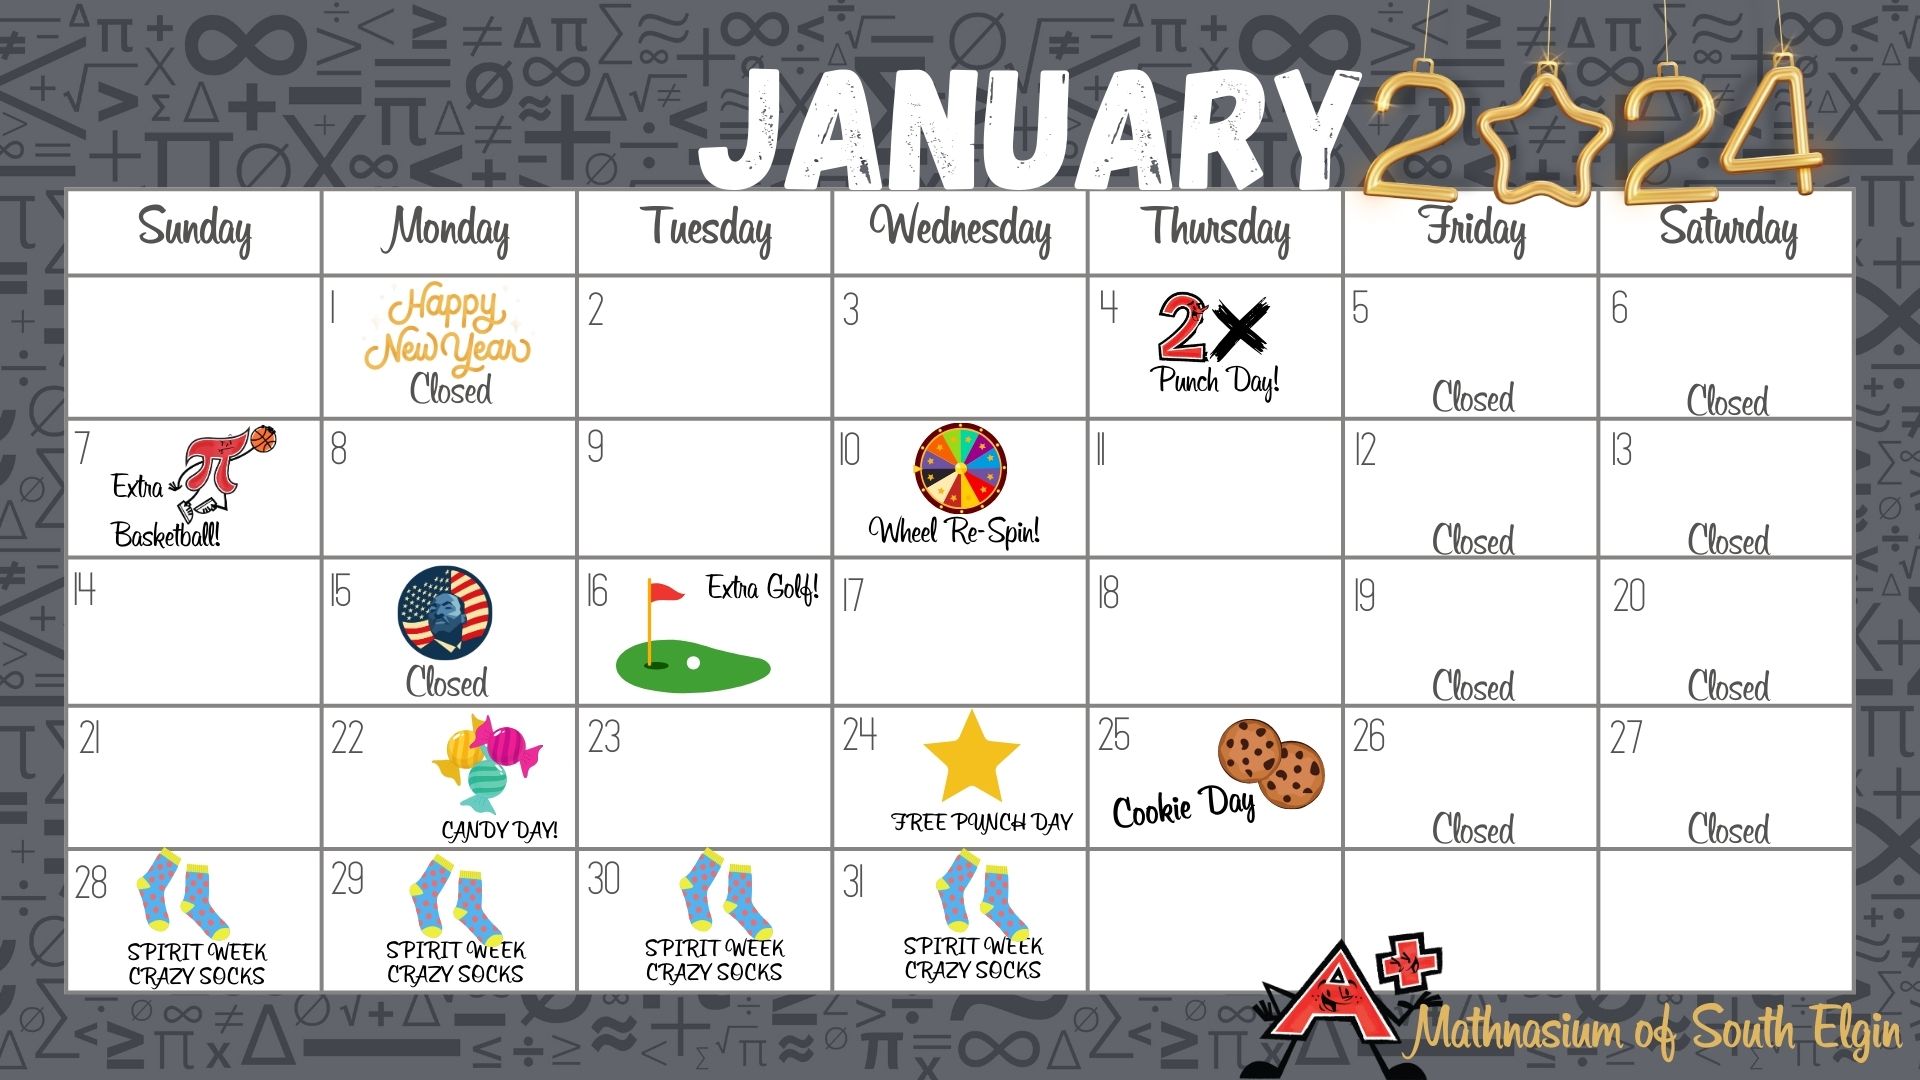 January Fun Calendar